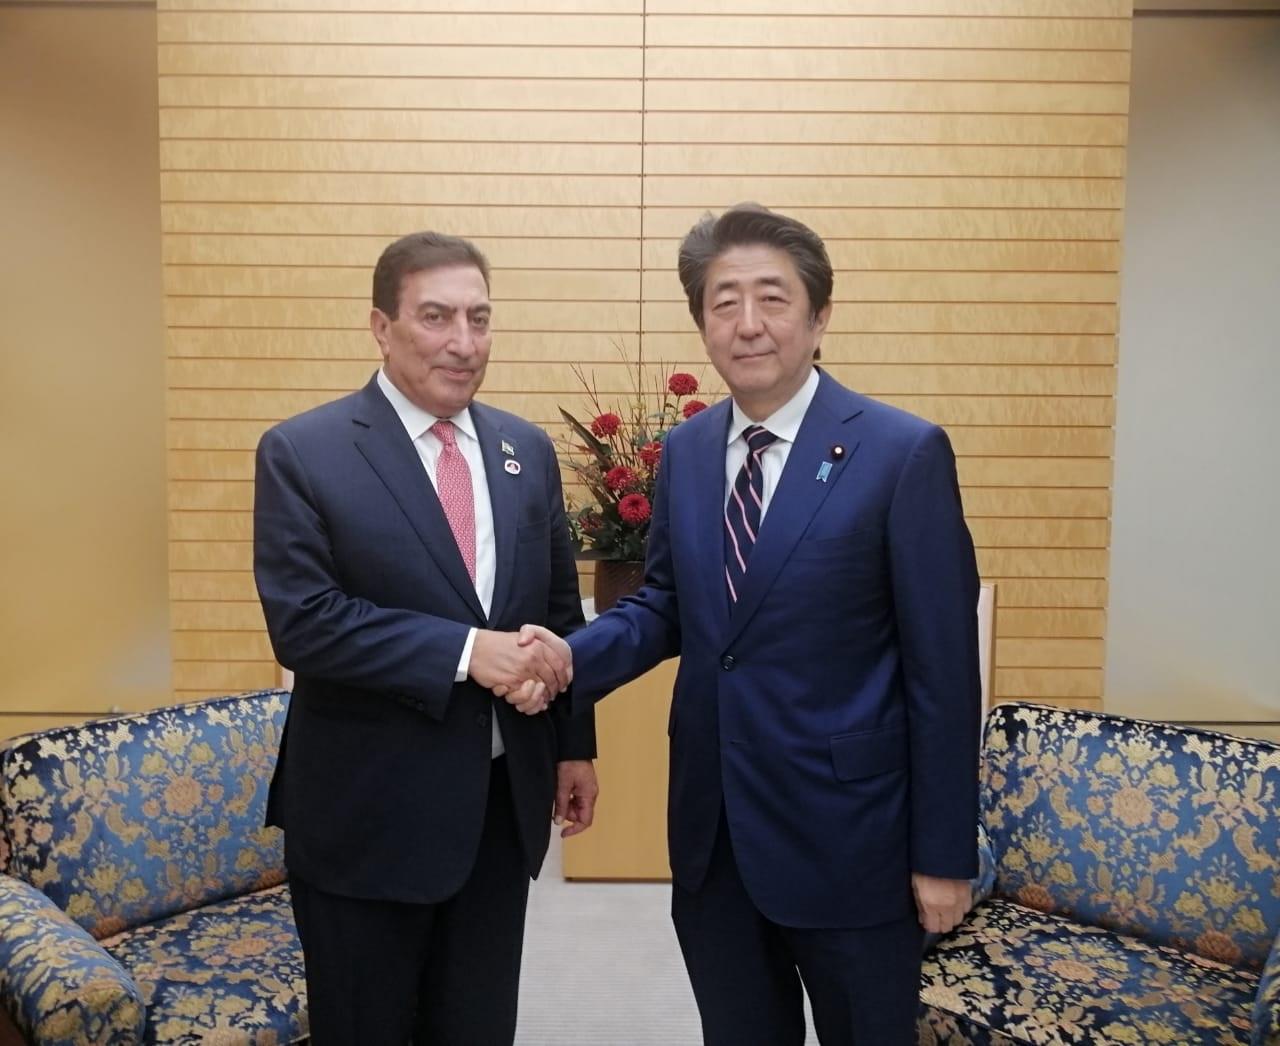 رئيس مجلس النواب عاطف الطراونة (يسار)، ورئيس الوزراء الياباني شينزو آبي (يمين) فب العاصمة اليابانية طوكيو. (مجلس النواب)